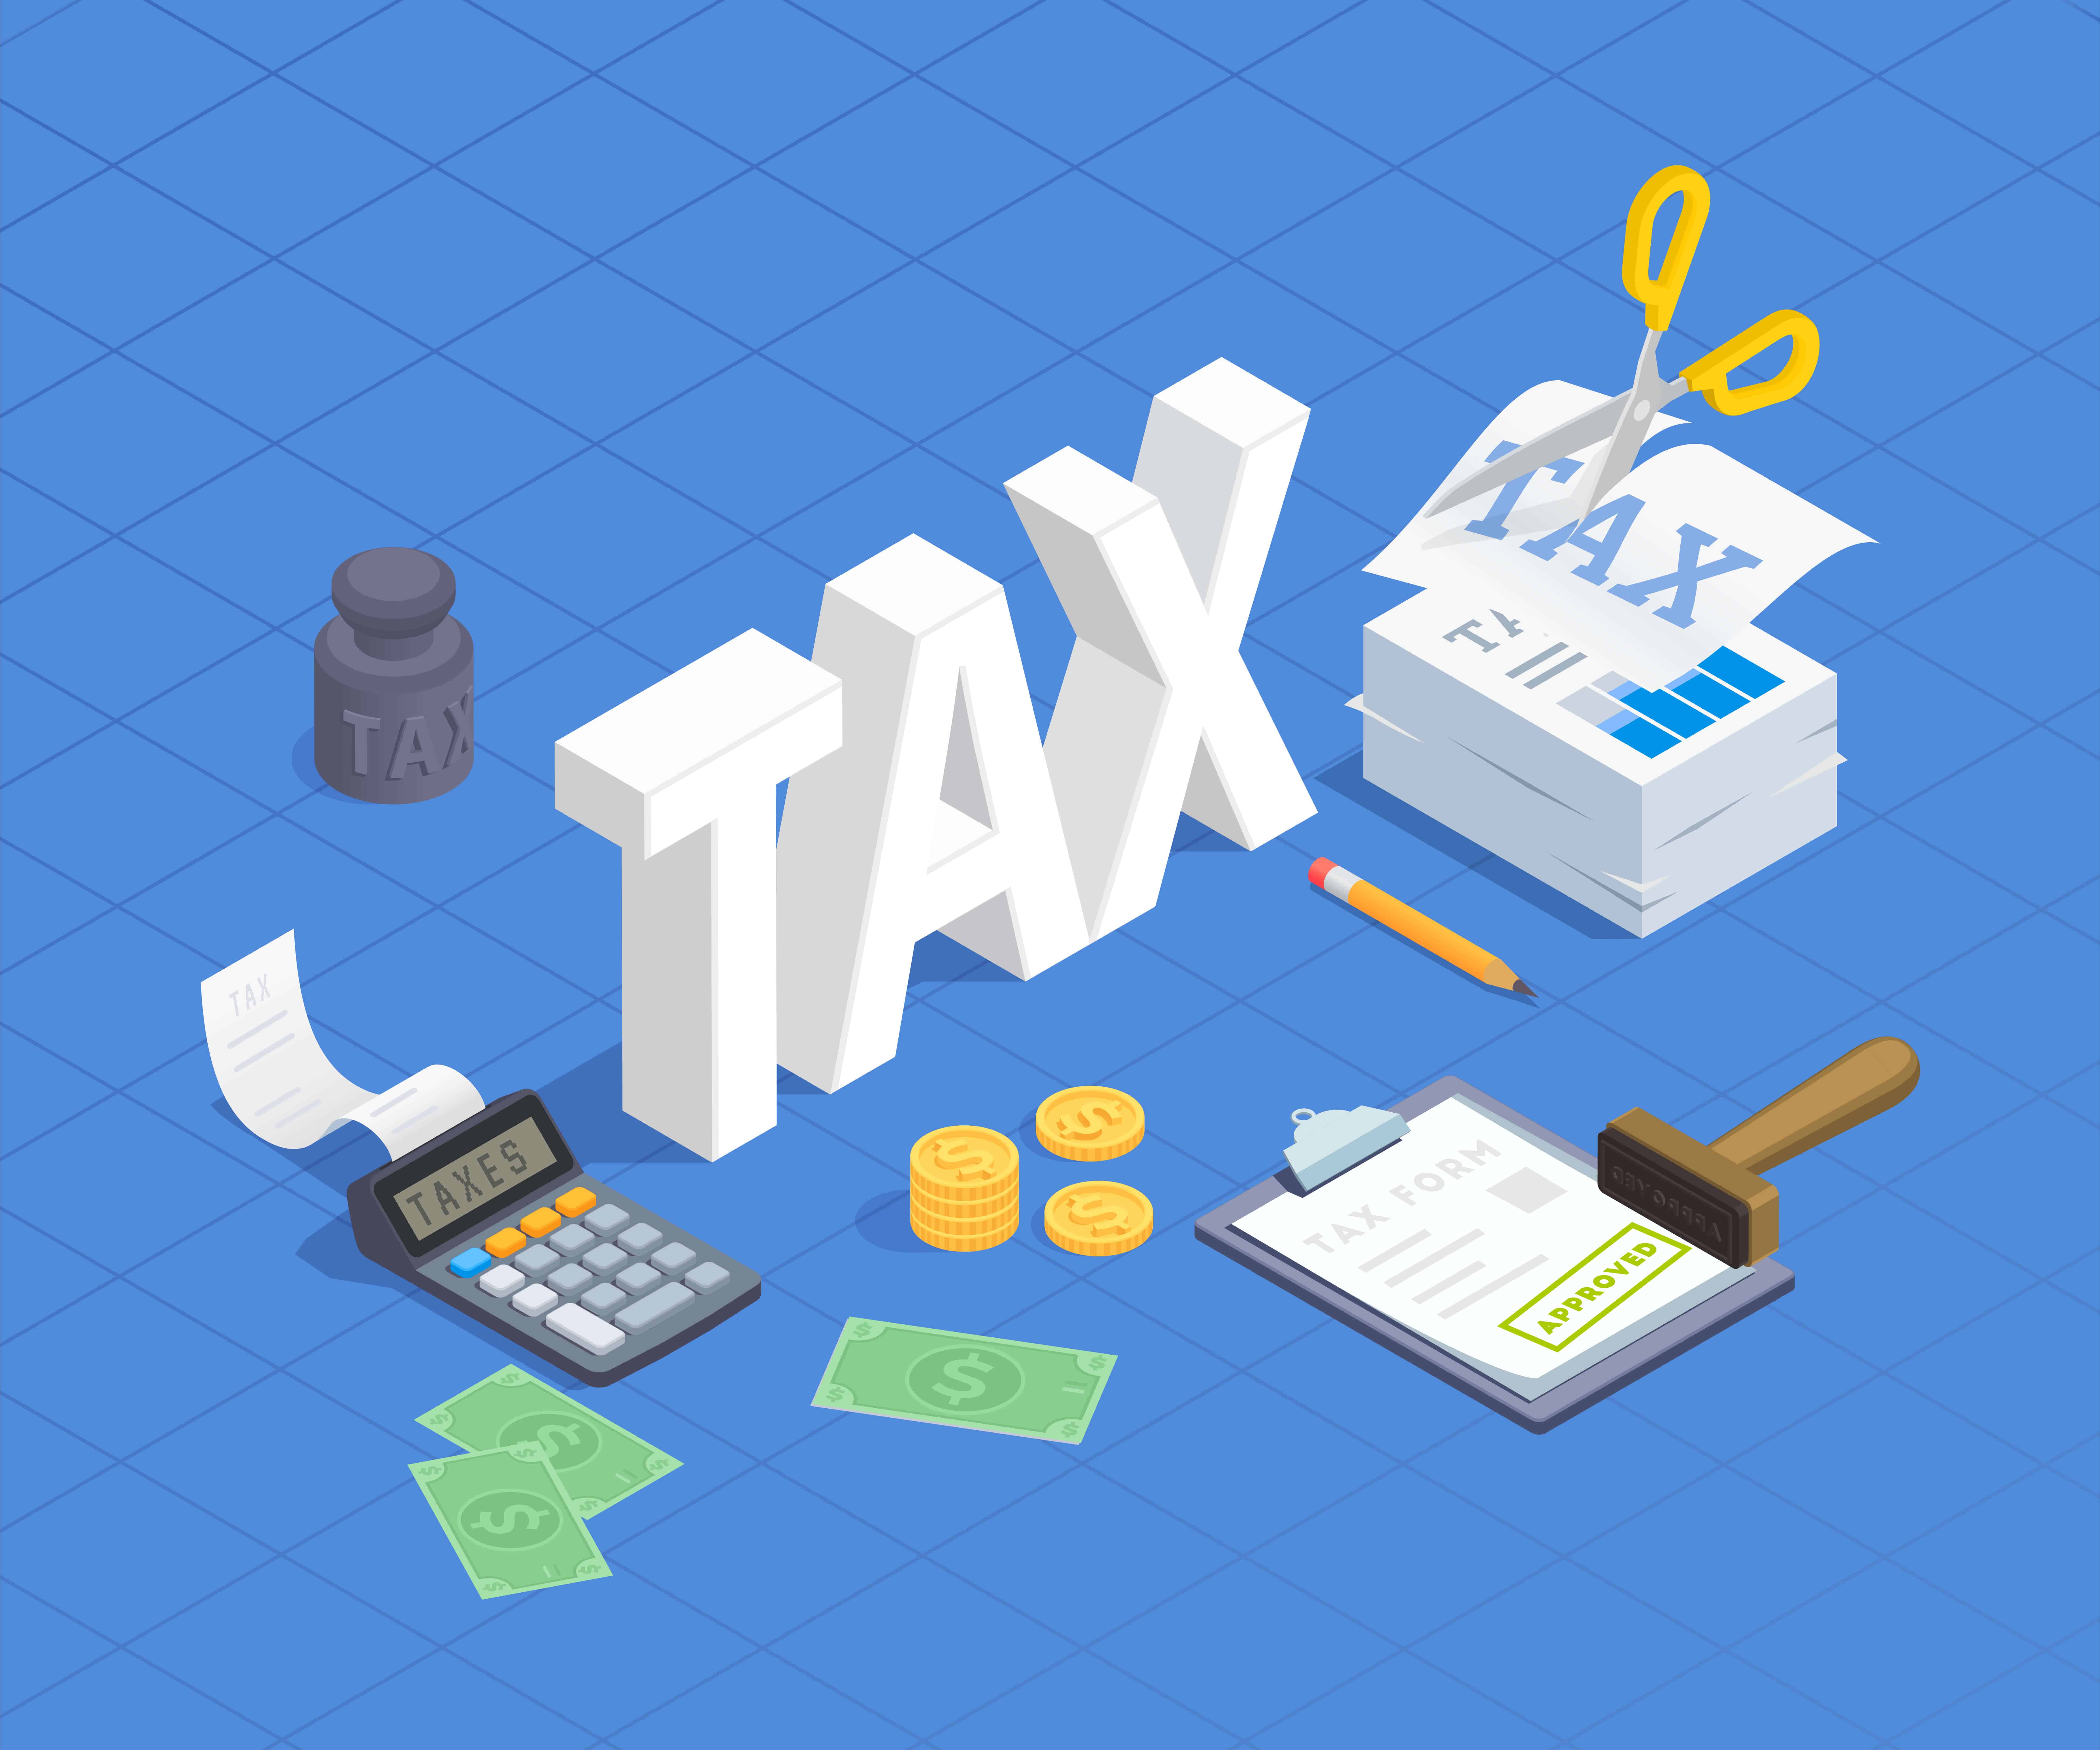 presumptive-taxation-44AD-44ADA-44AE